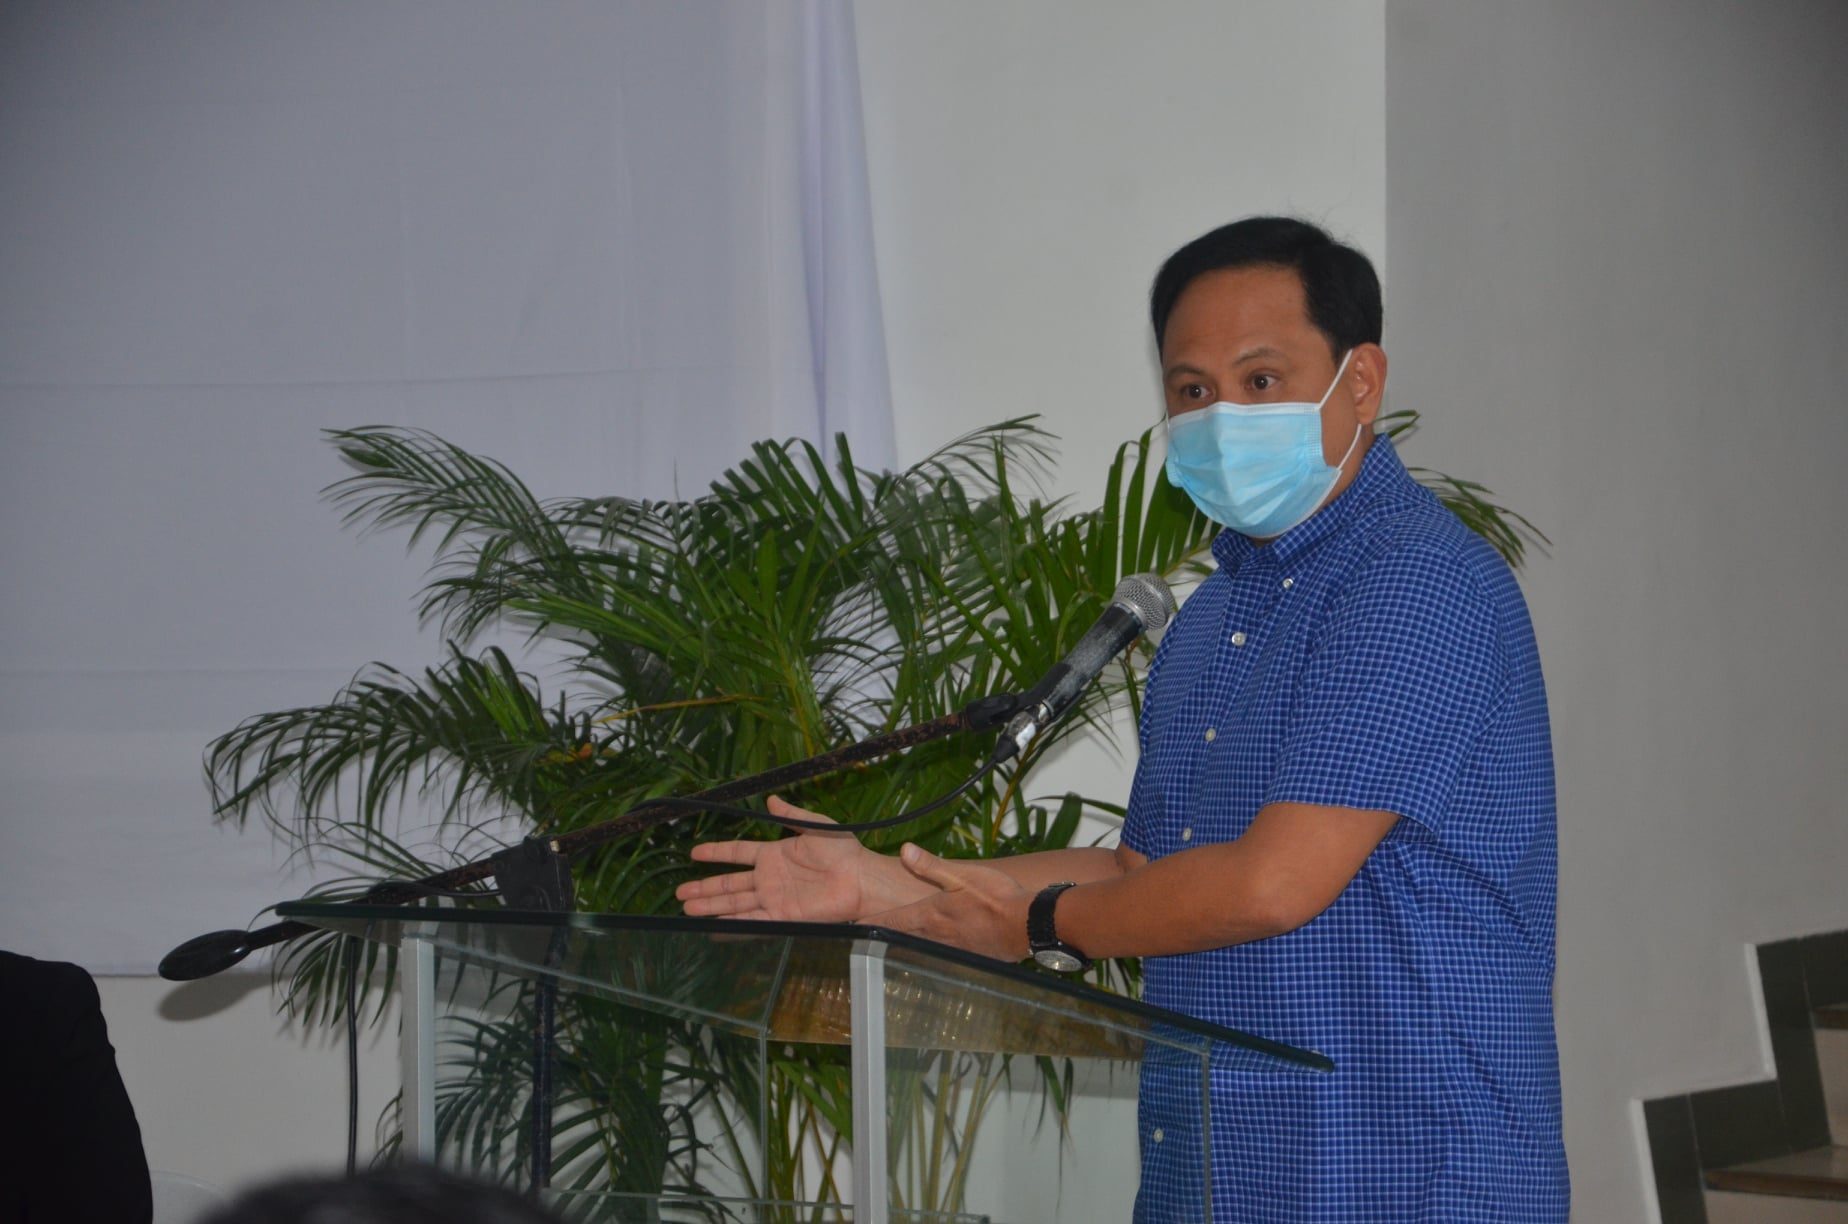 Iloilo Governor Defensor supports Robredo’s presidential run